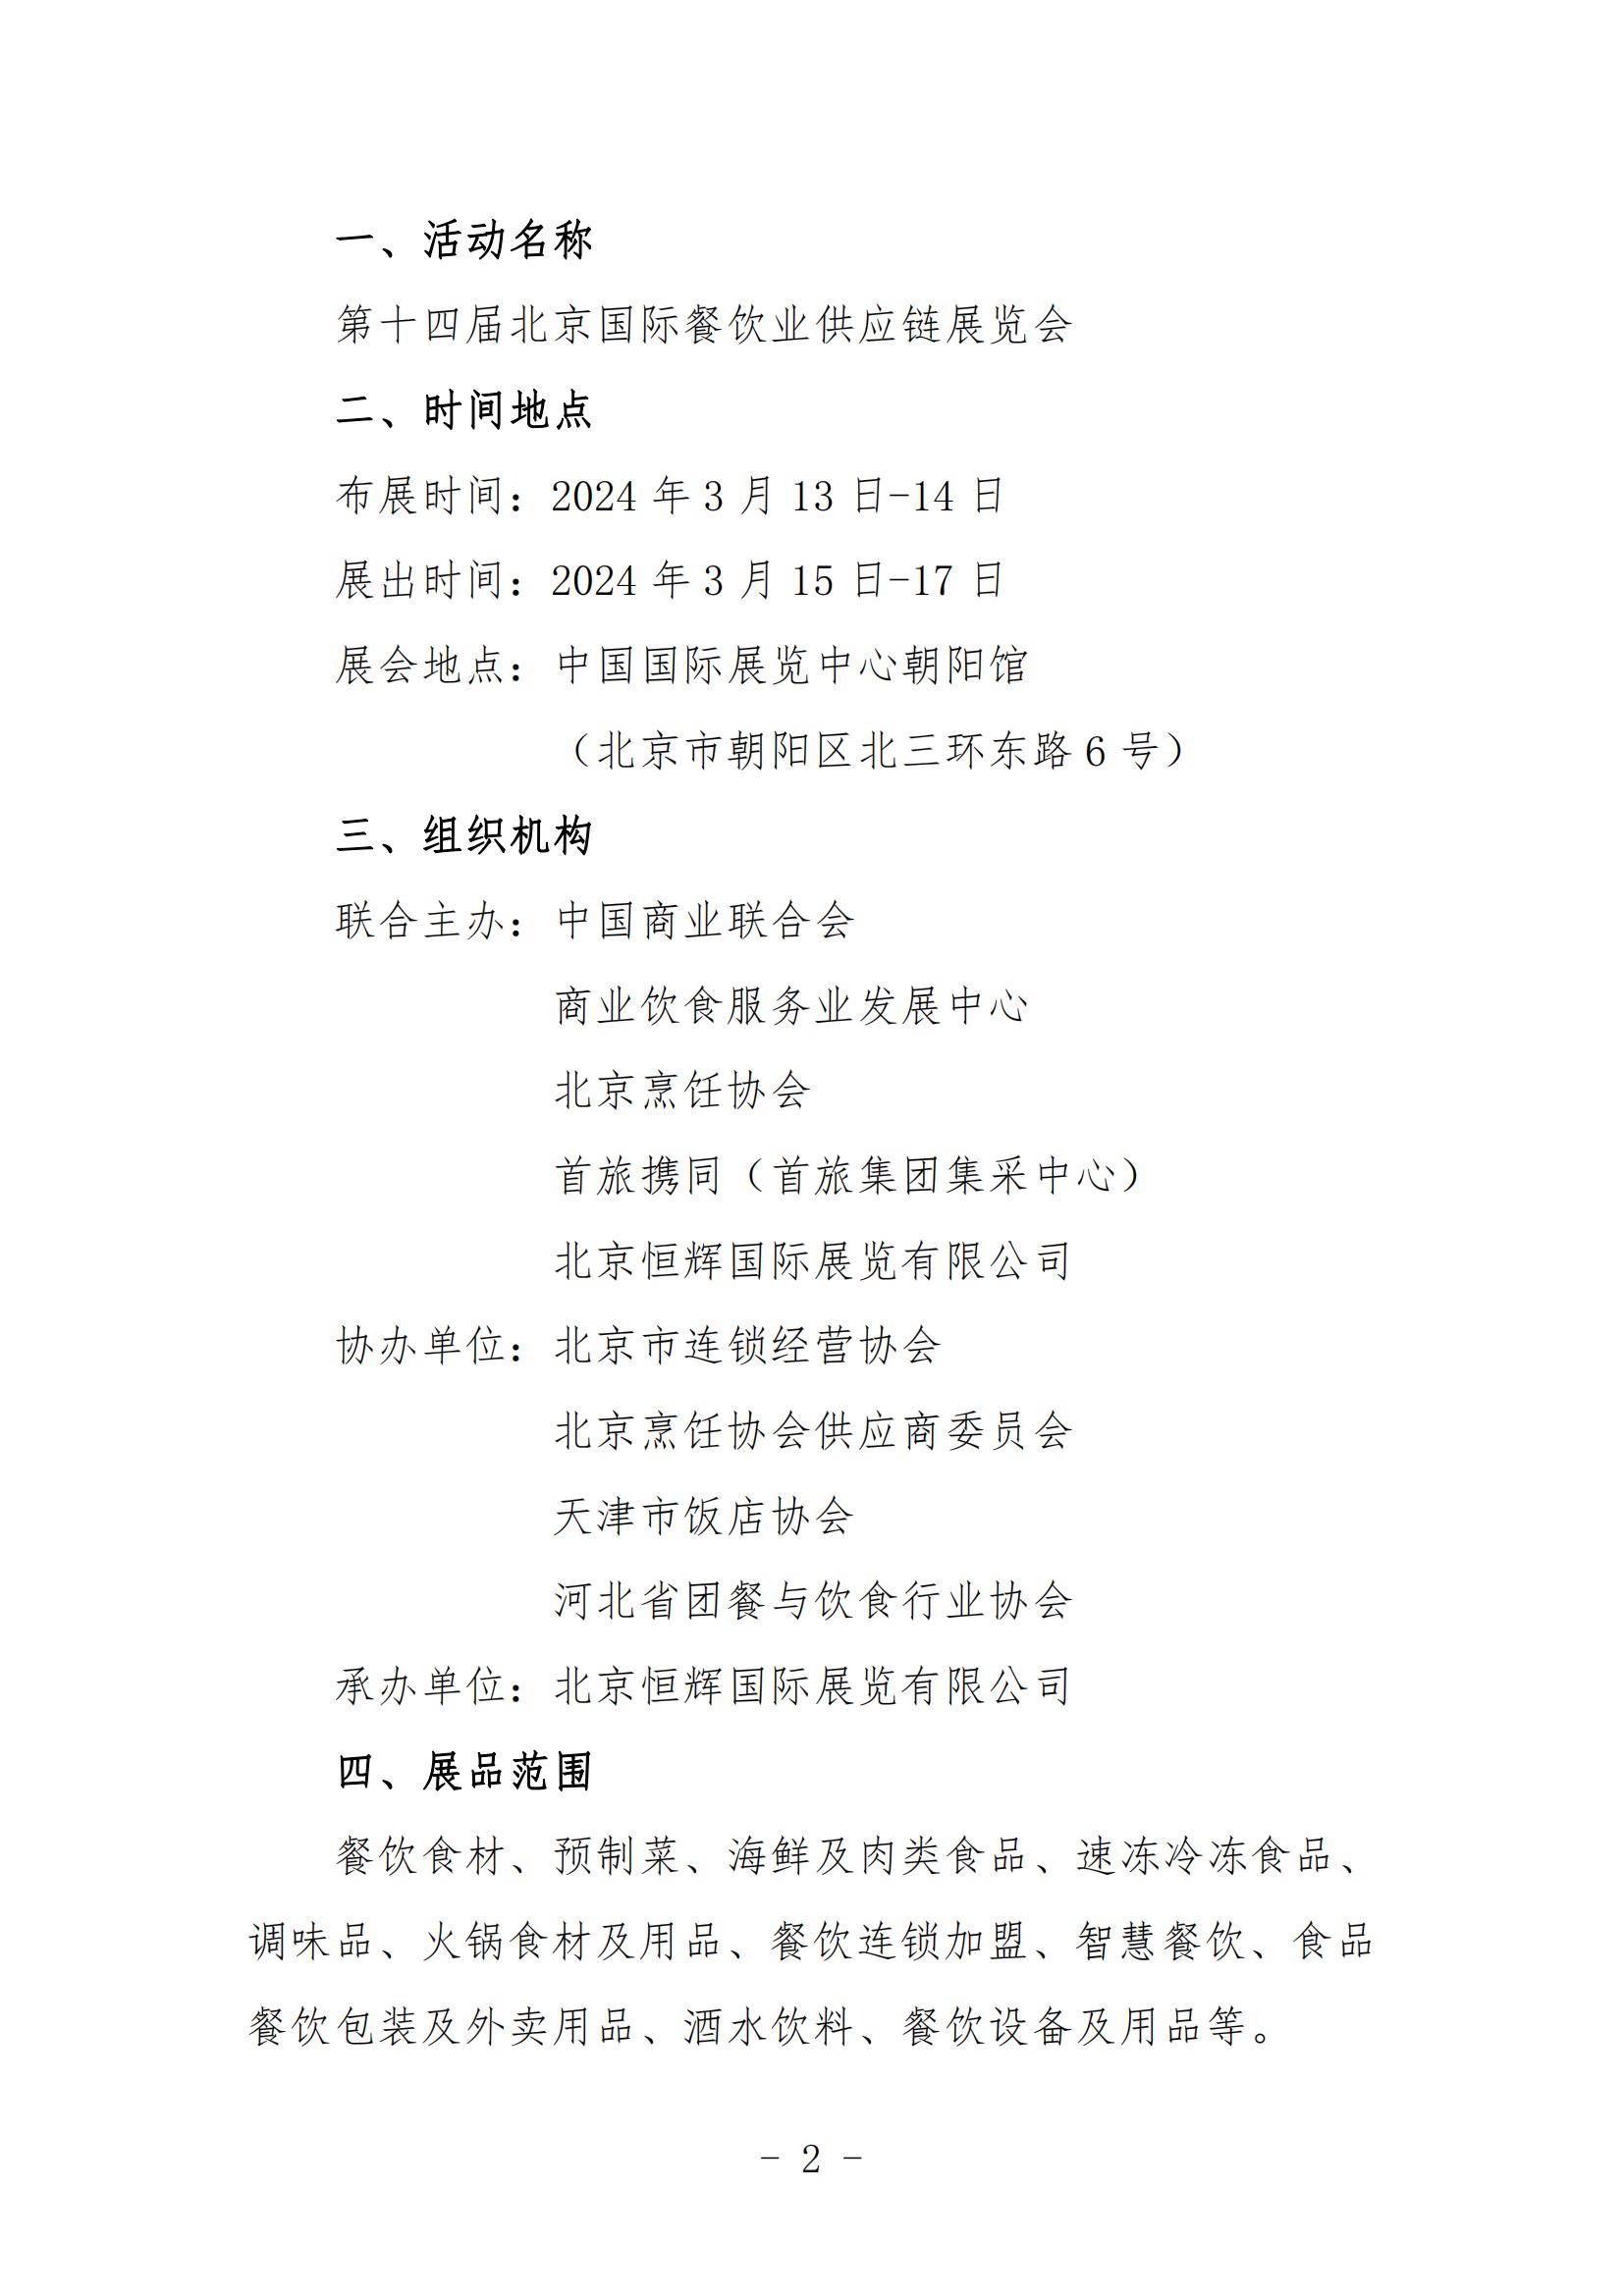 关于邀请参加第十四届北京国际餐饮业供应链展览会的函(图1)